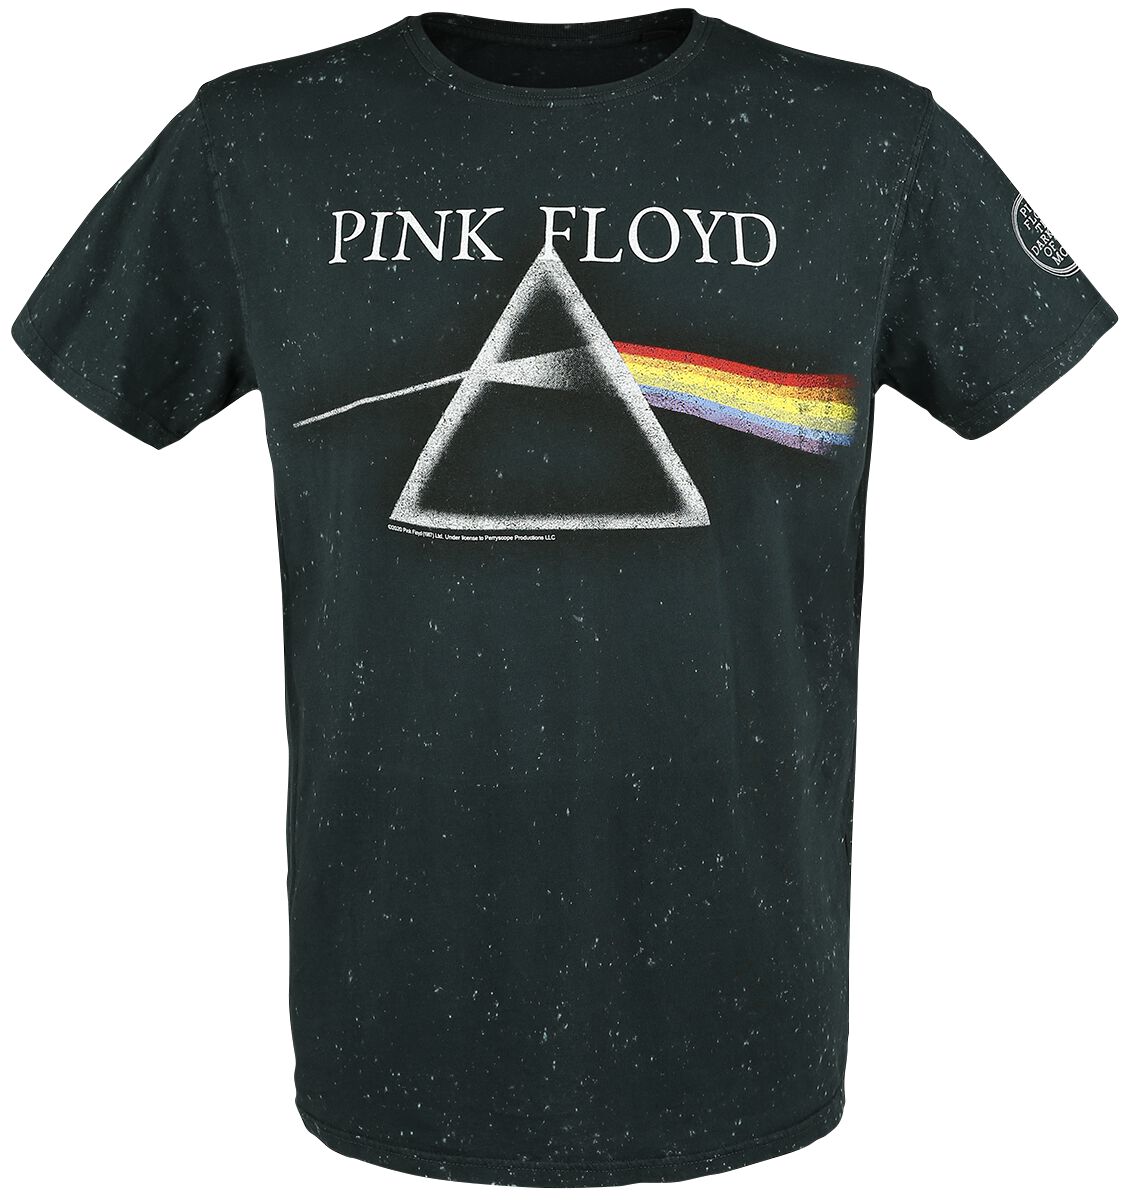 Pink Floyd T-Shirt - The Dark Side Of The Moon - S bis 3XL - für Männer - Größe M - anthrazit  - EMP exklusives Merchandise!